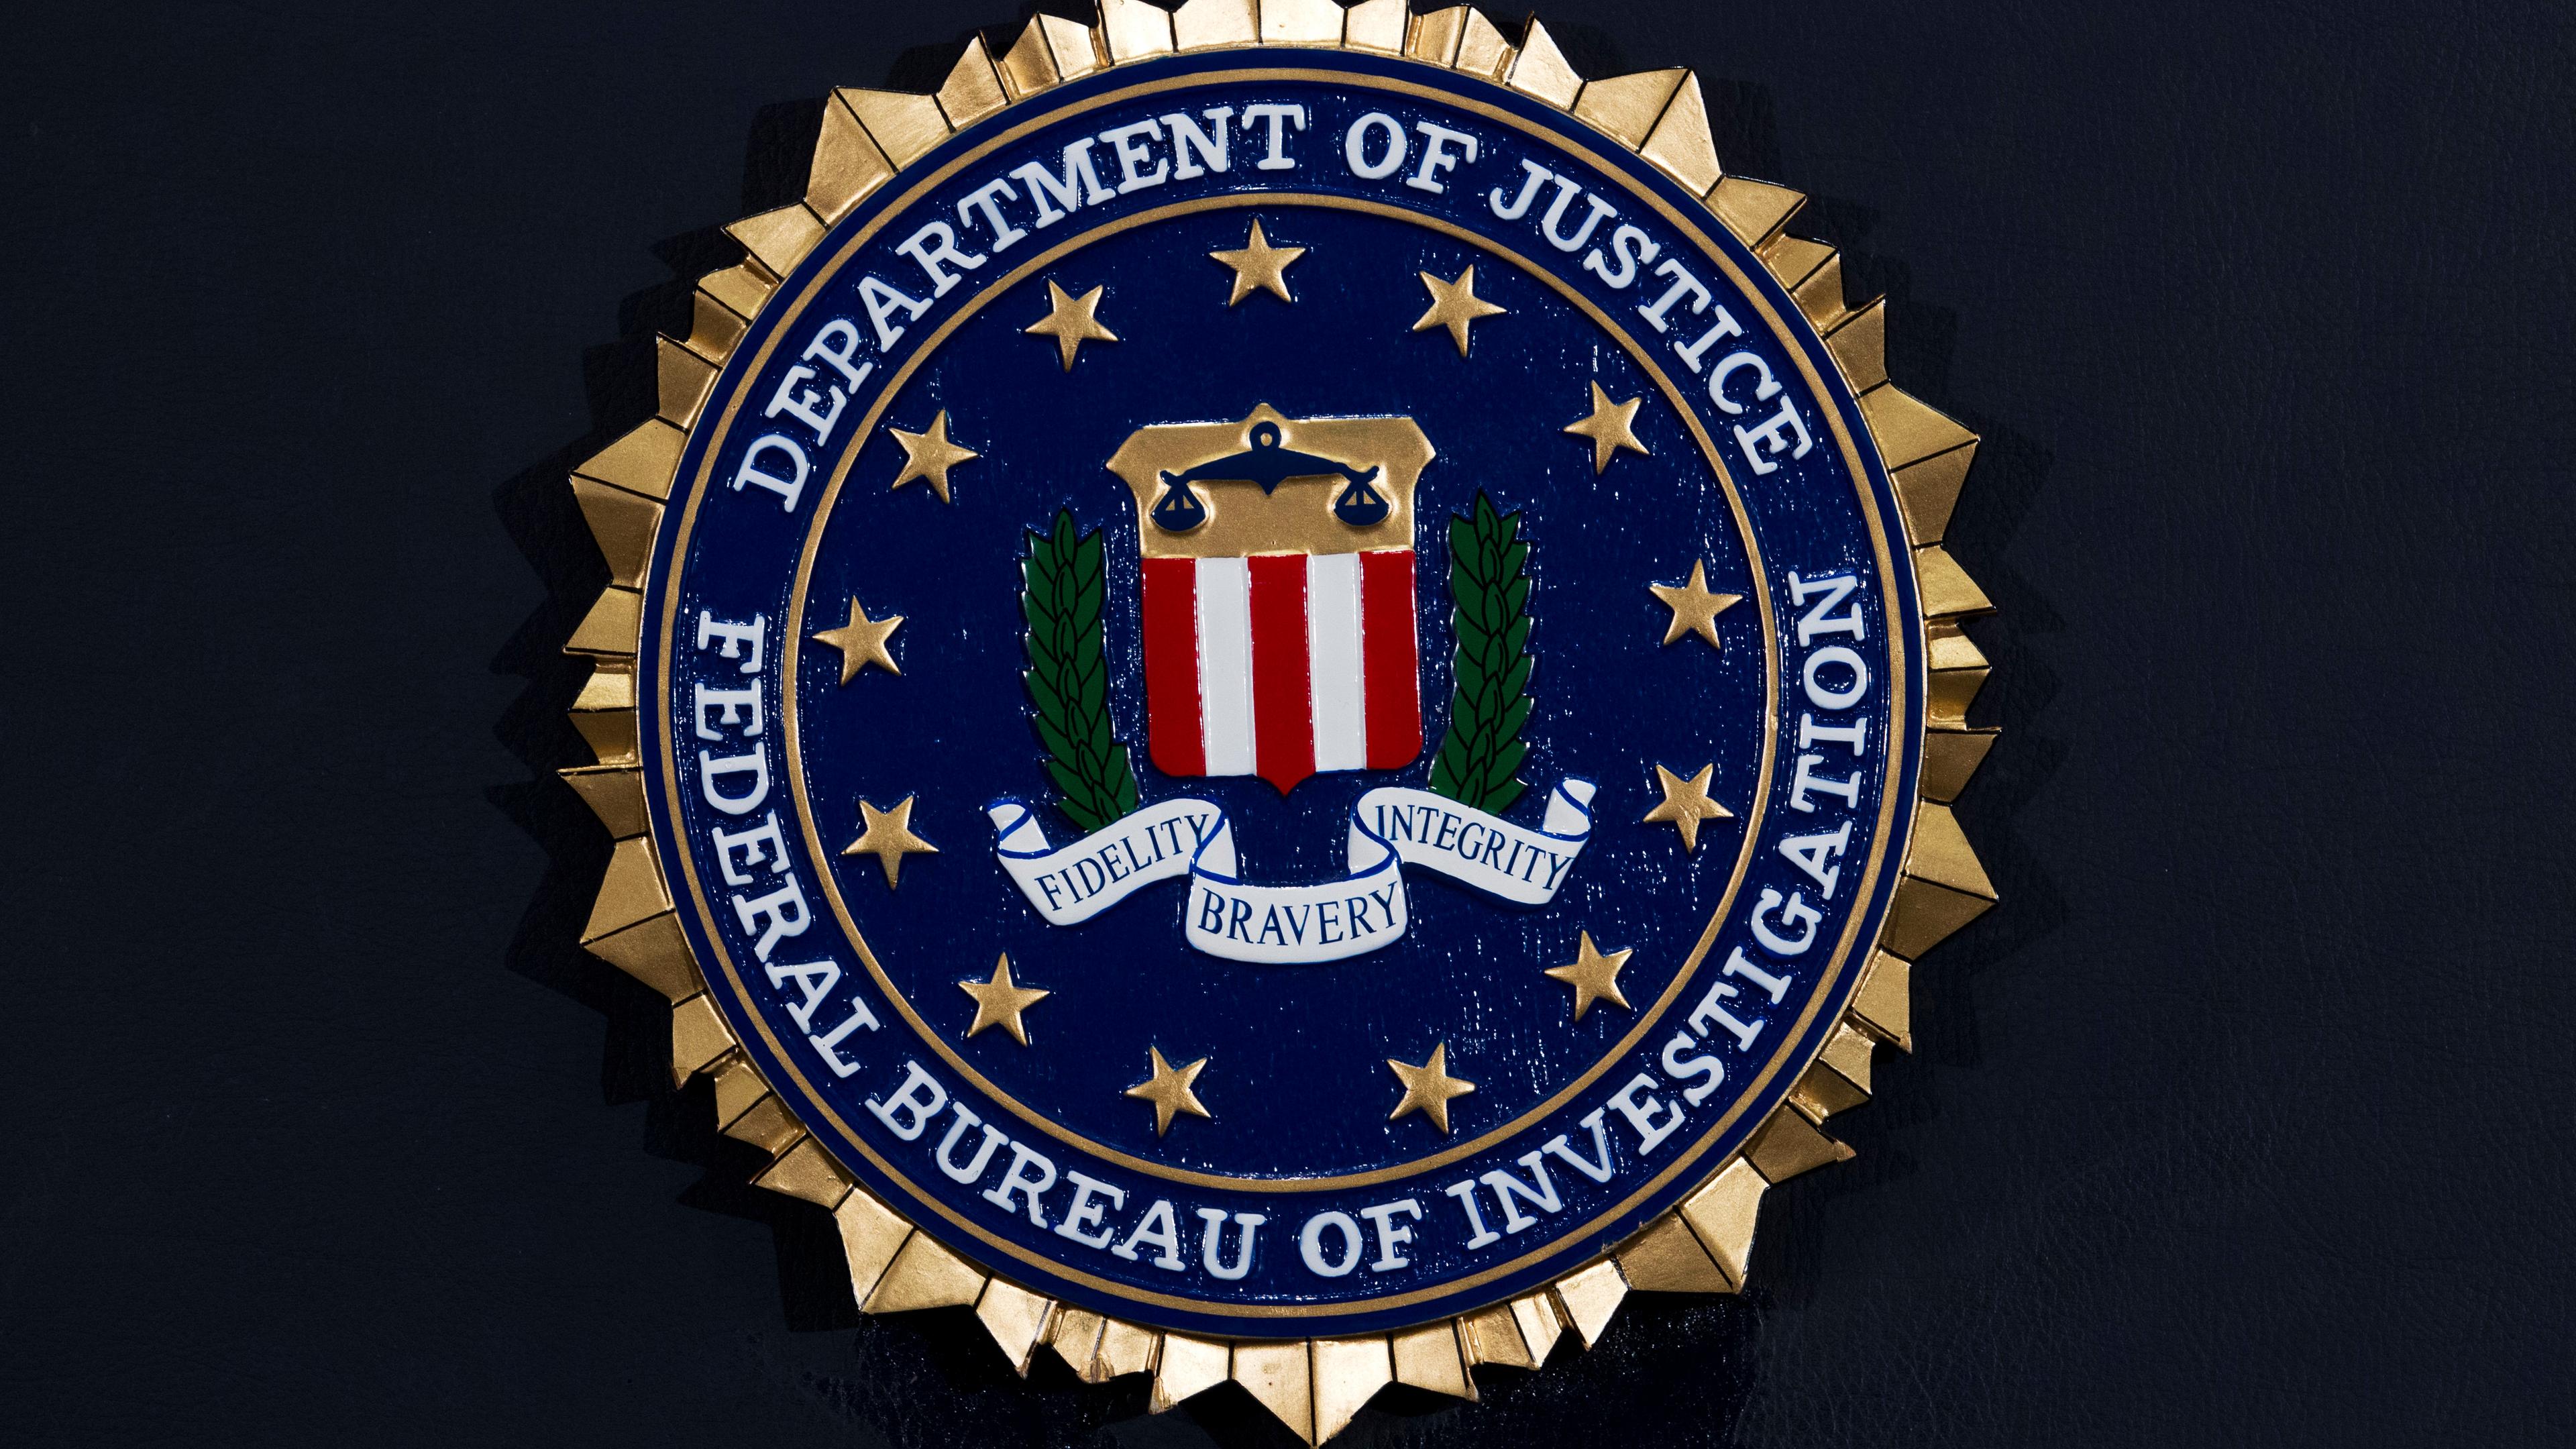 Das FBI-Siegel vor schwarzem Hintergrund.